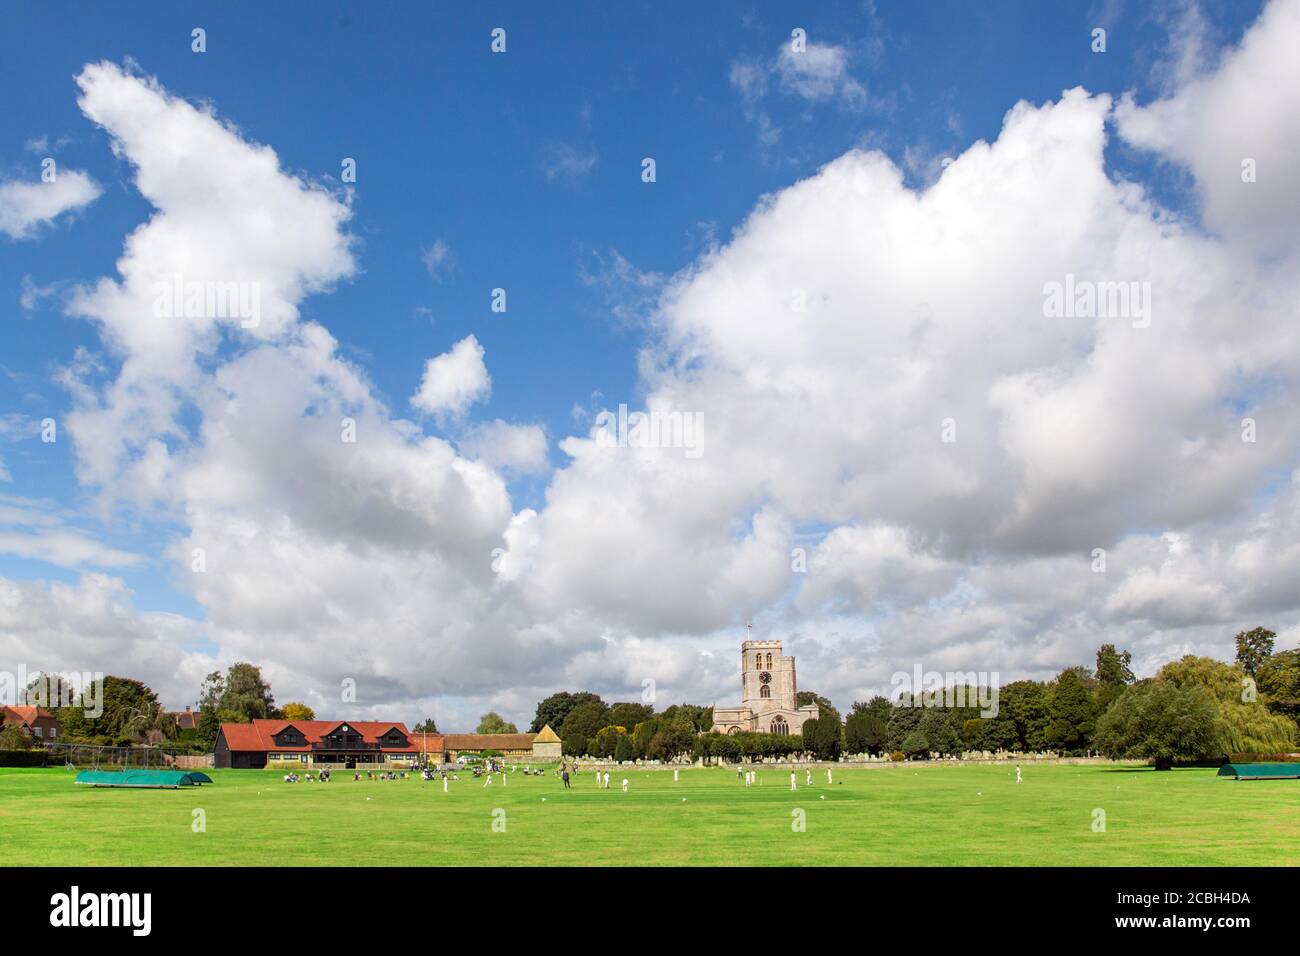 Junior partita di cricket giovani sul pittoresco prato della chiesa sede del club di cricket Thame Oxfordshire England con St Mary's. chiesa sullo sfondo Foto Stock